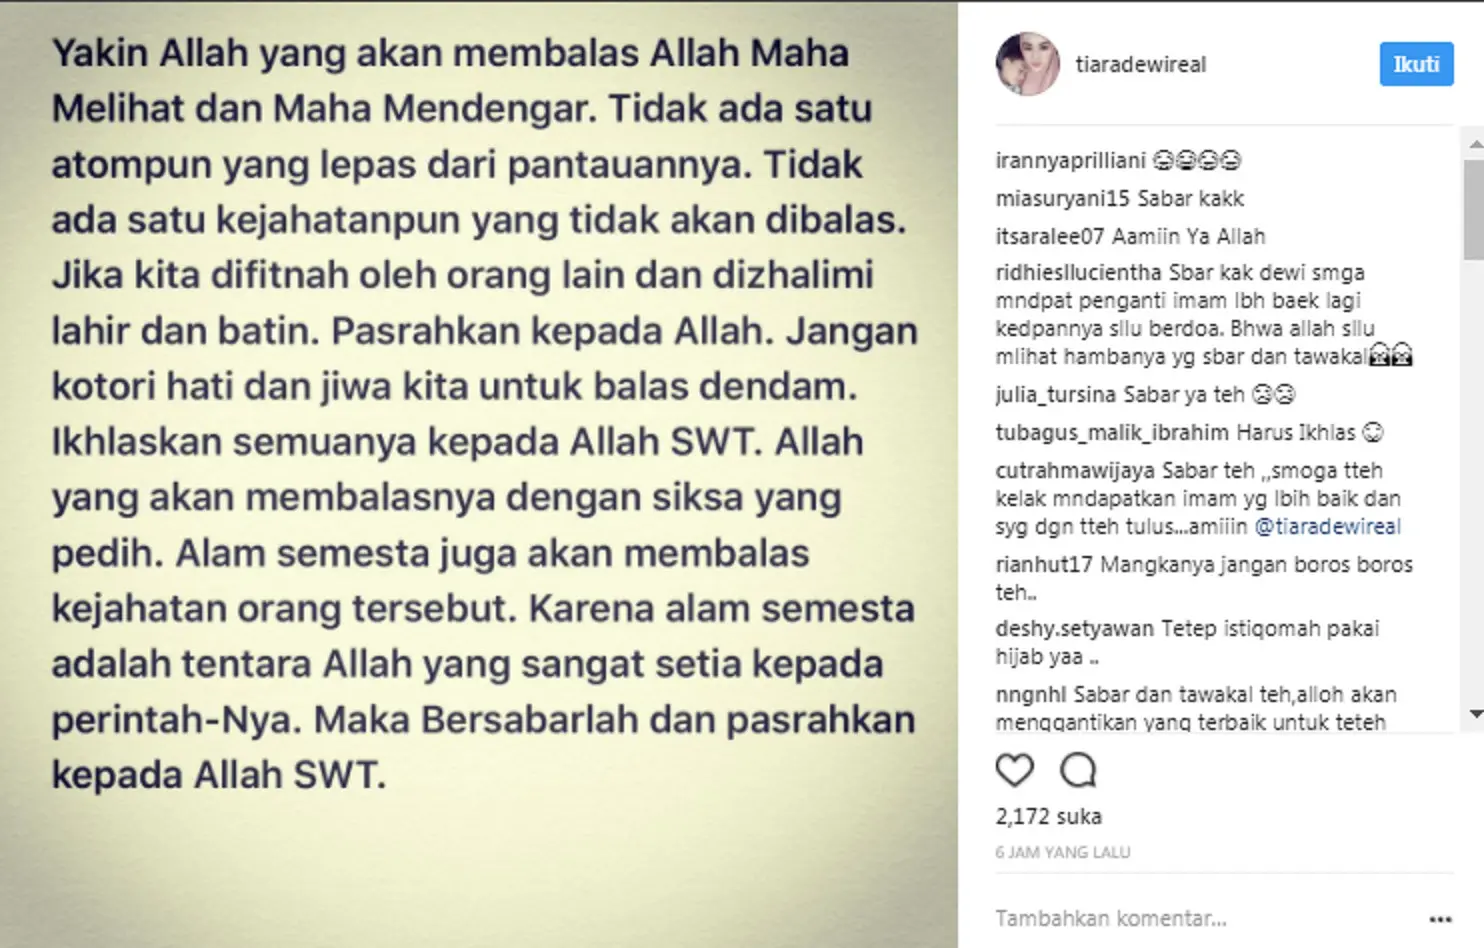 Tiara Dewi unggah kalimat motivasi. (Instagram/tiaradewireal)